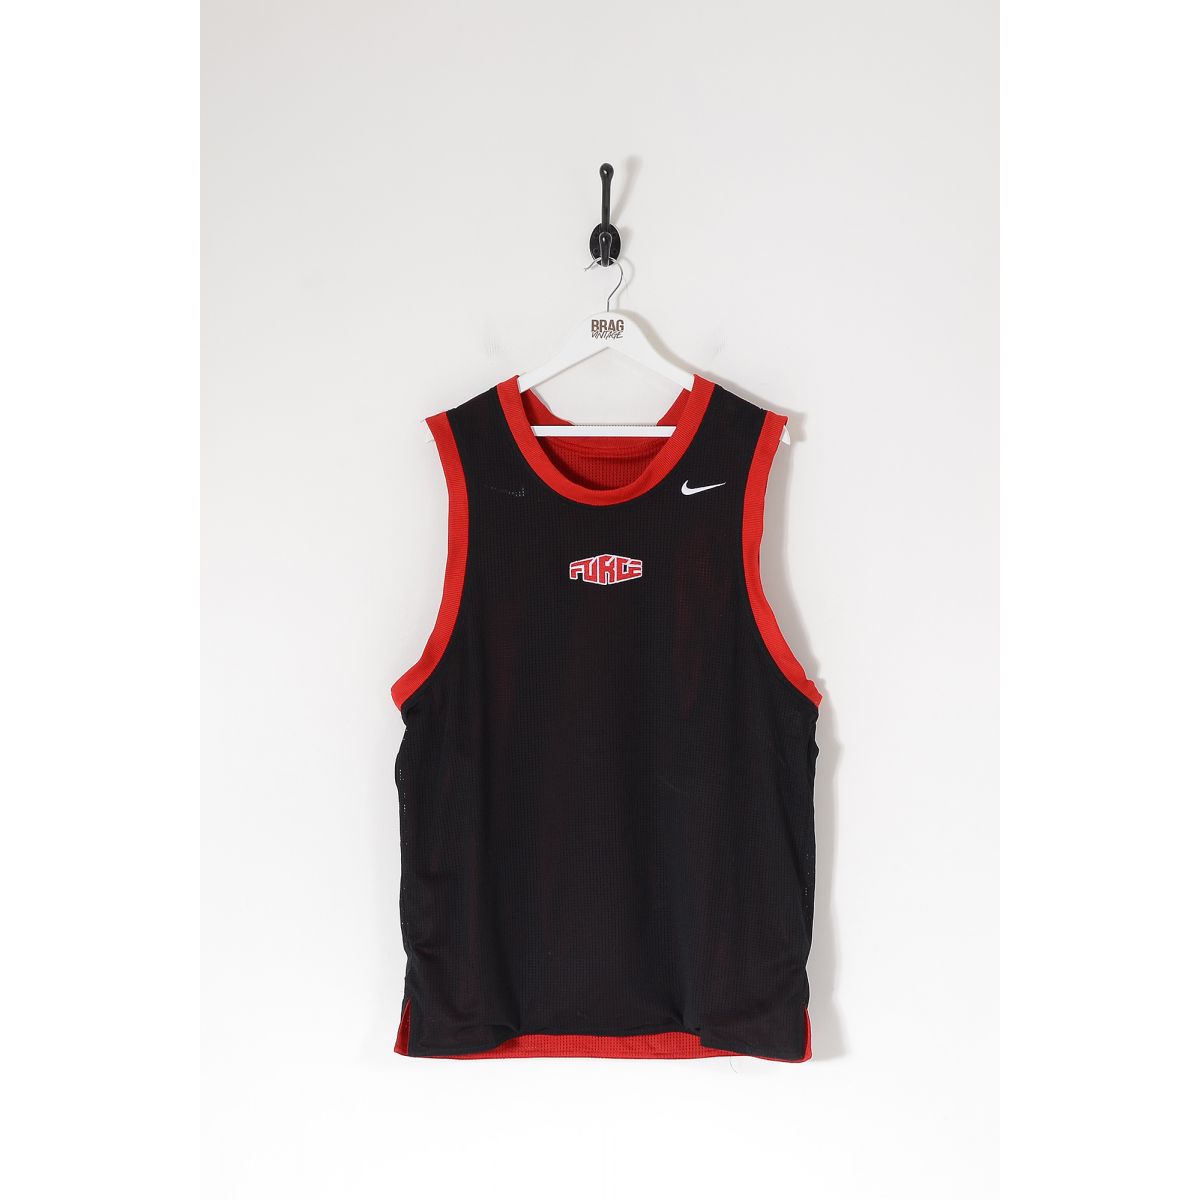 Vintage NIKE "Force" Reversible Sports Vest Red/Black XL